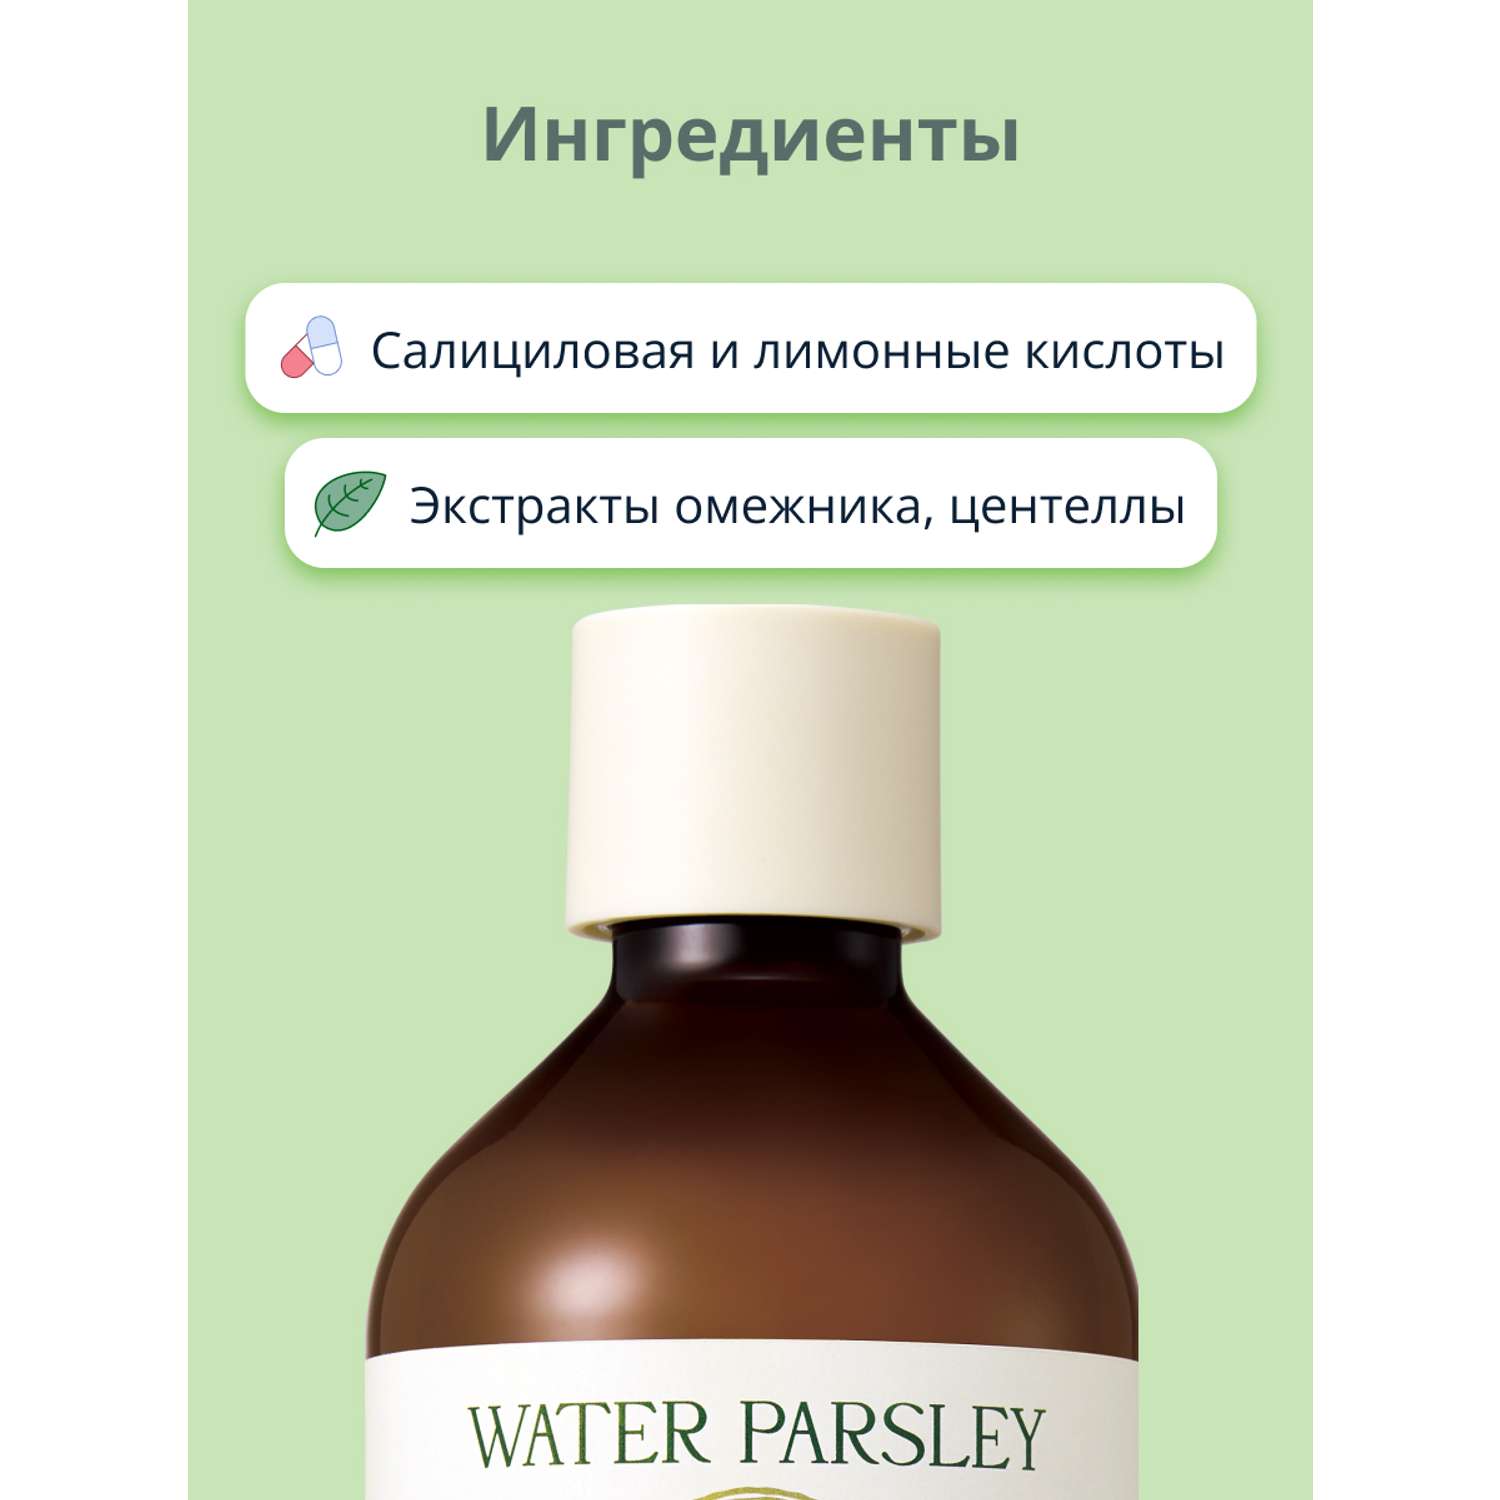 Тонер для лица Skinfood Water parsley с экстрактом омежника против несовершенств кожи 300 мл - фото 3